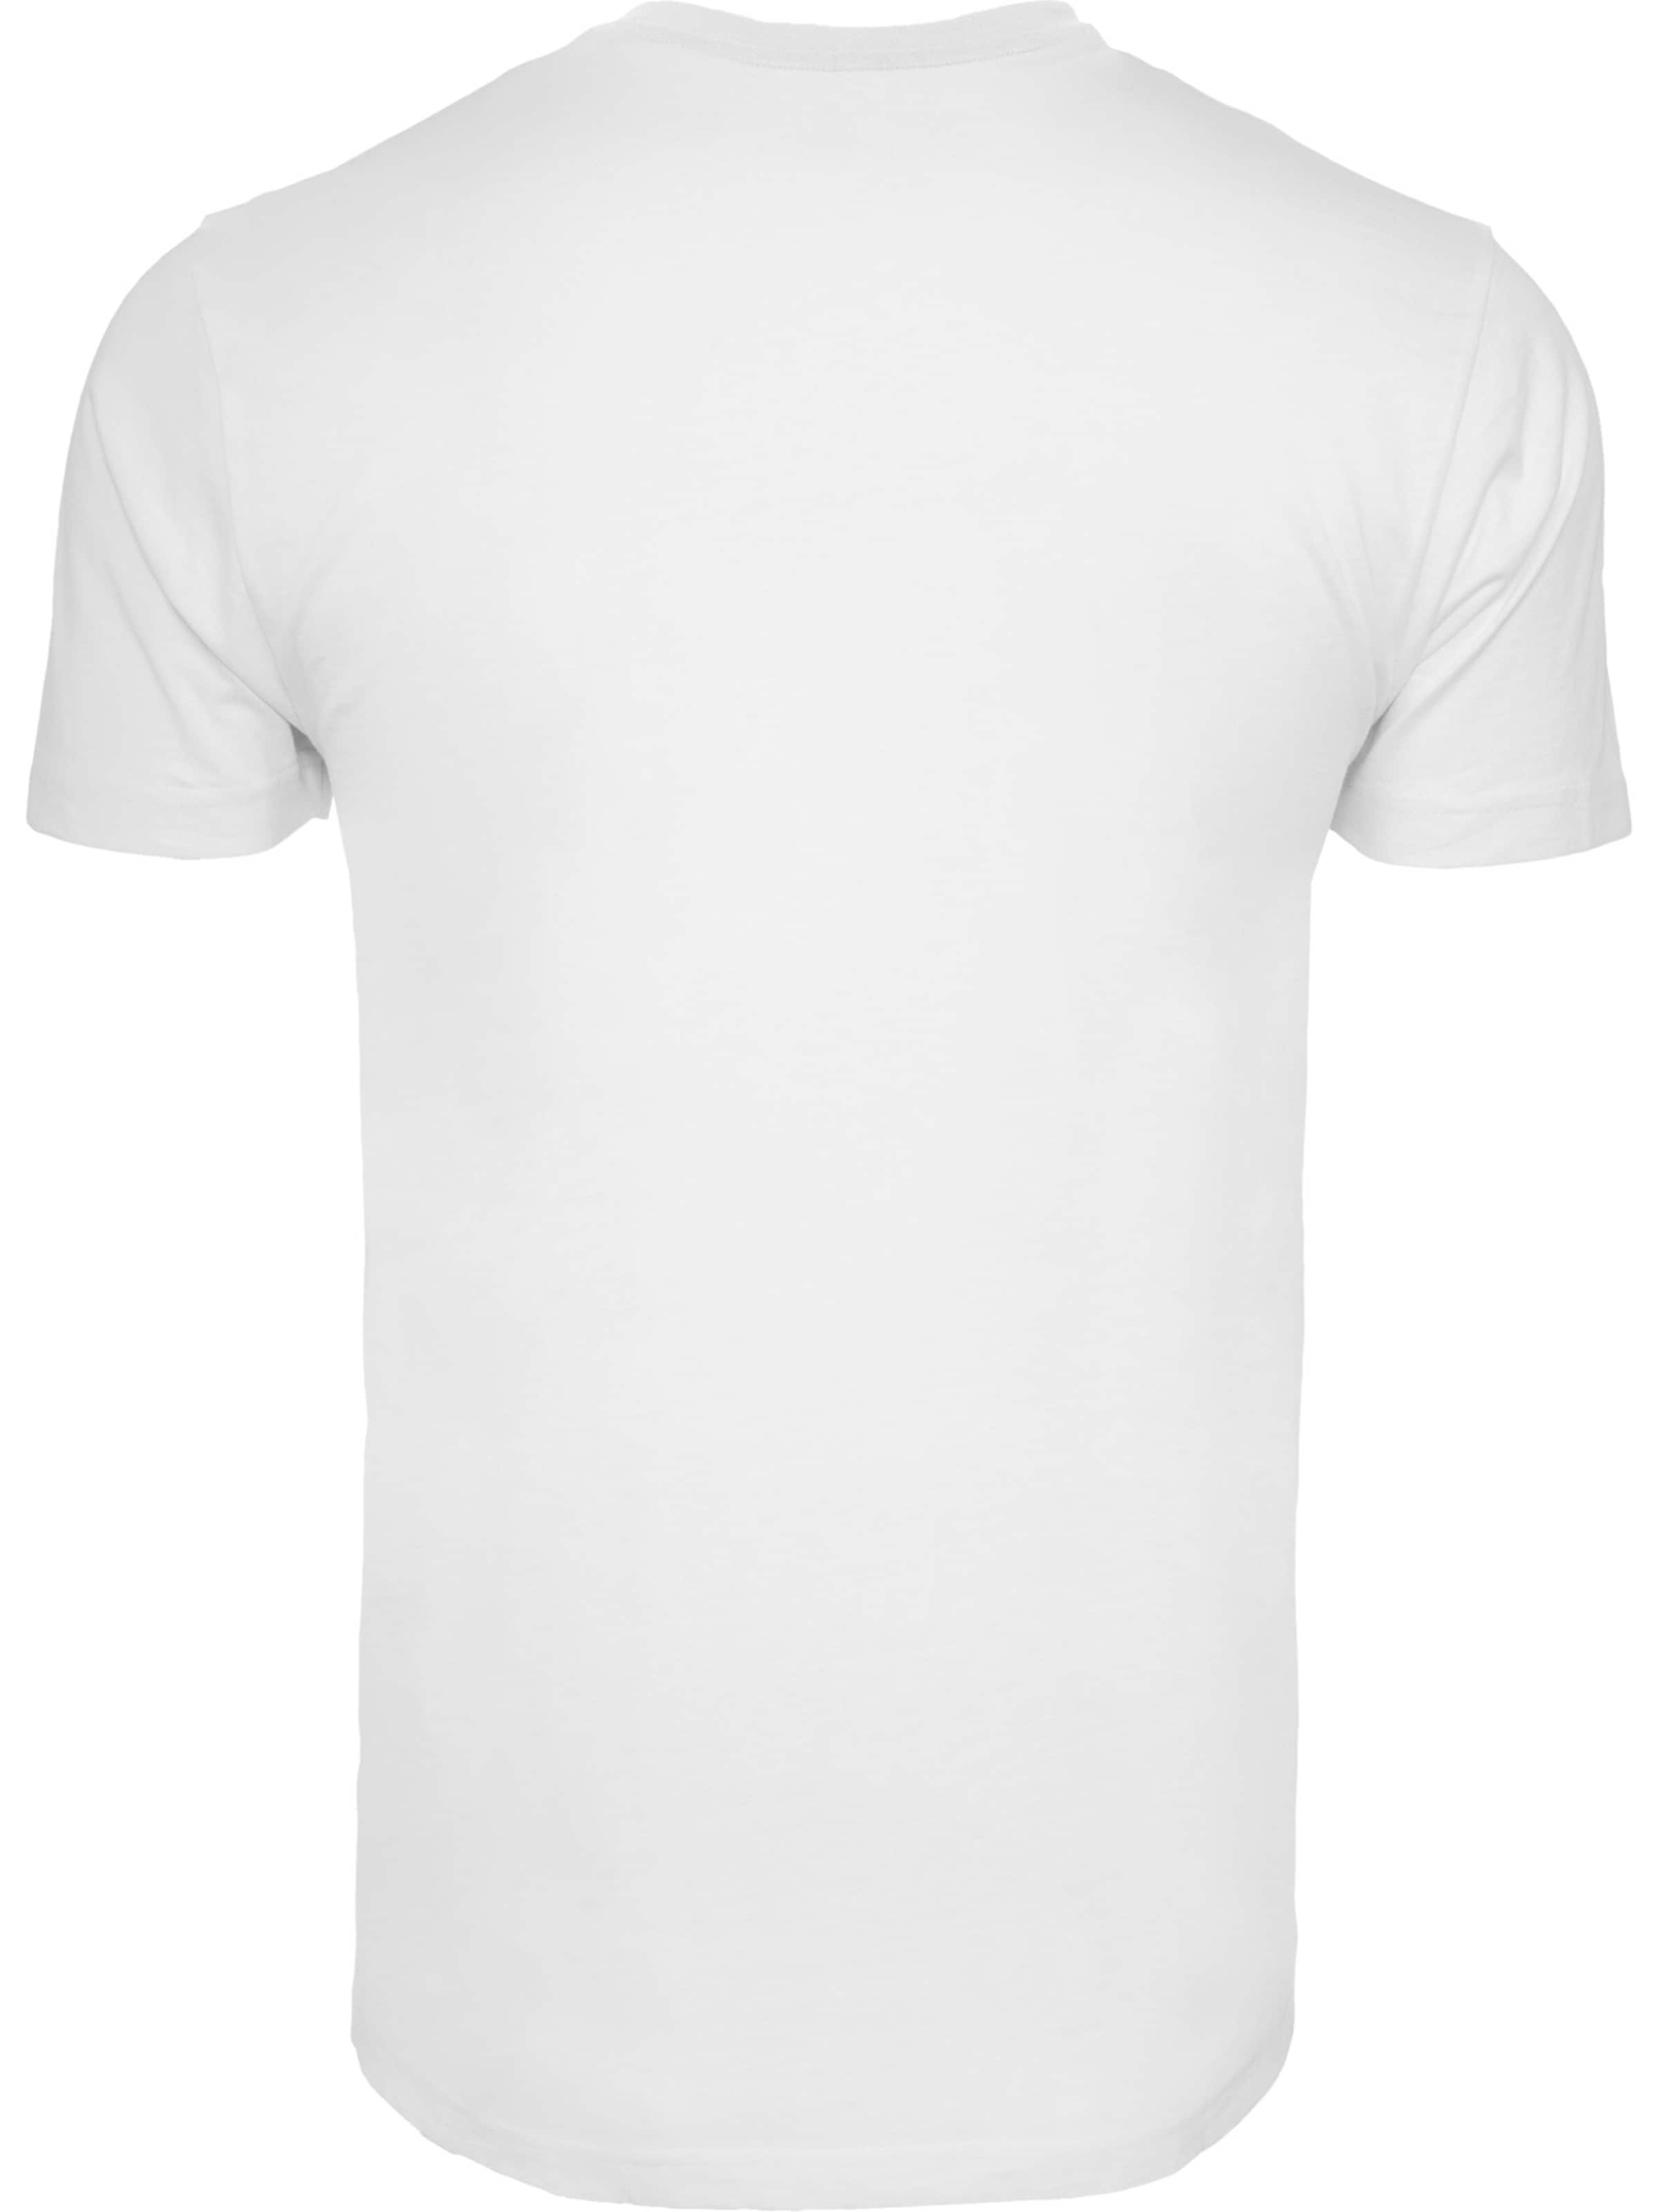 Männer Große Größen F4NT4STIC Shirt in Weiß - TV07006